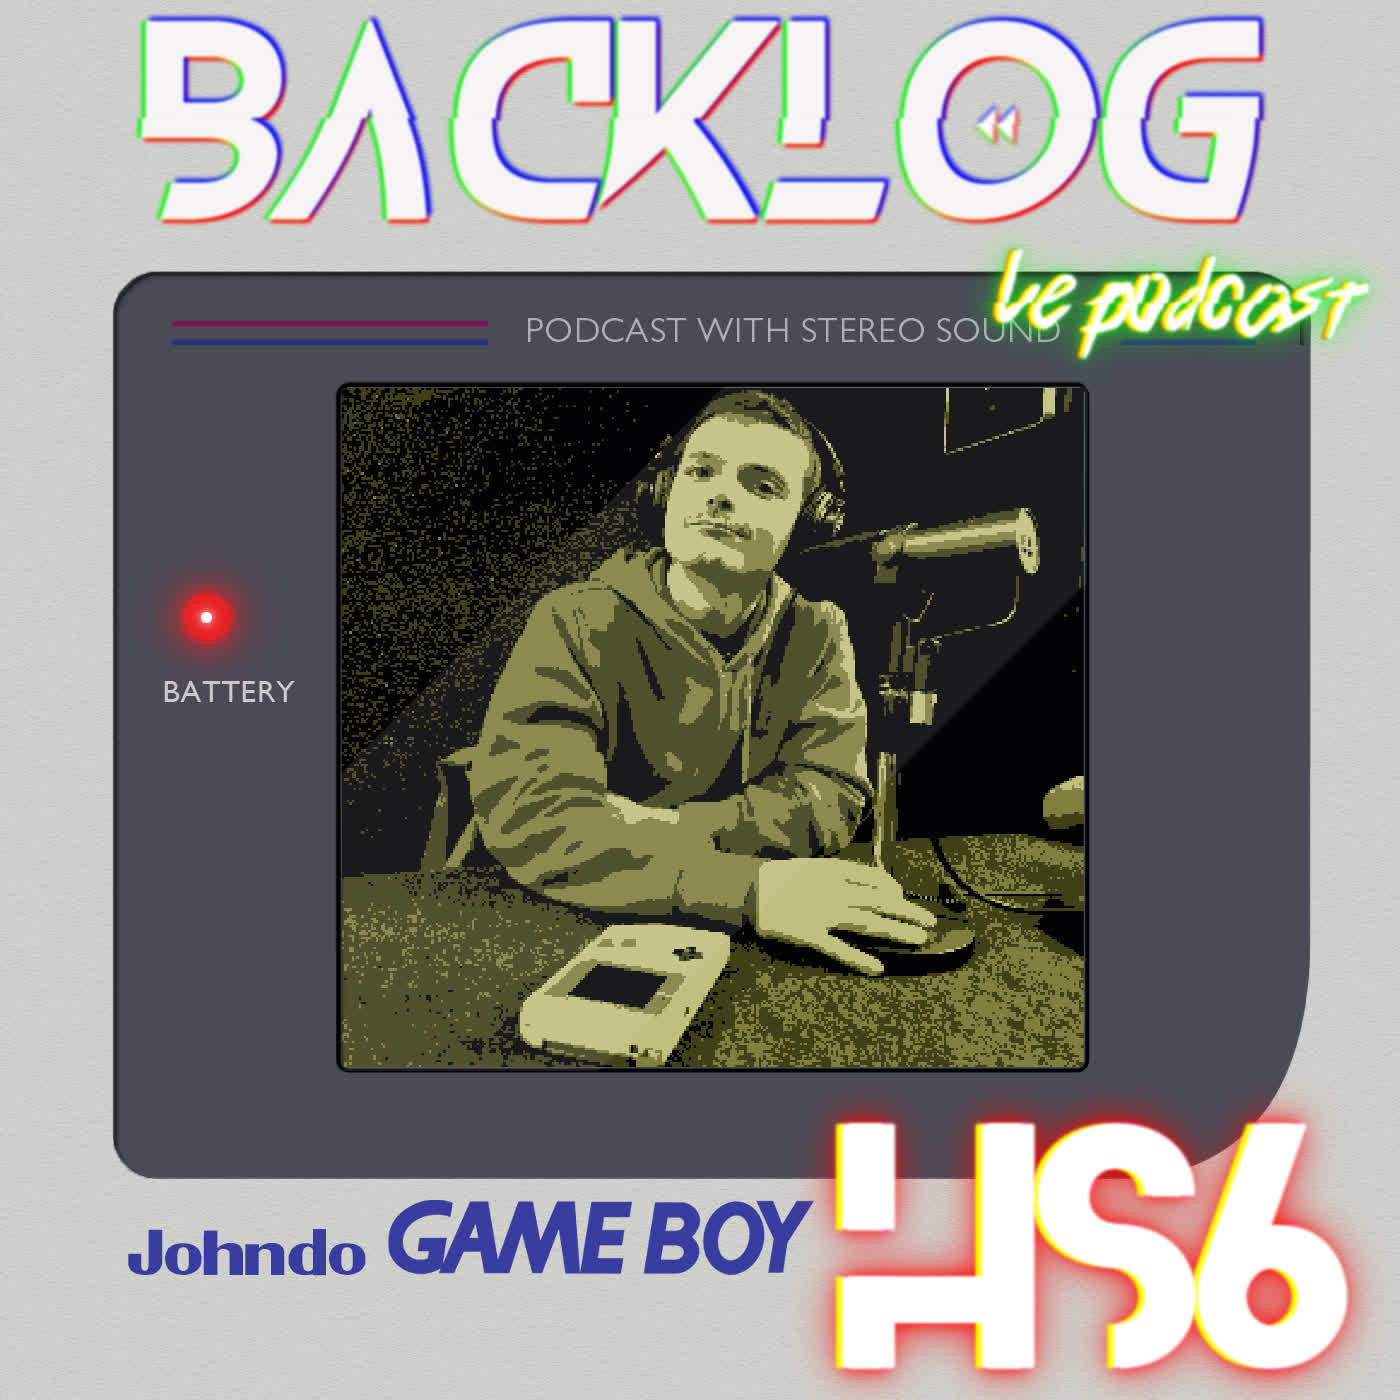 Backlog HS 6 - Rencontre avec Johndo